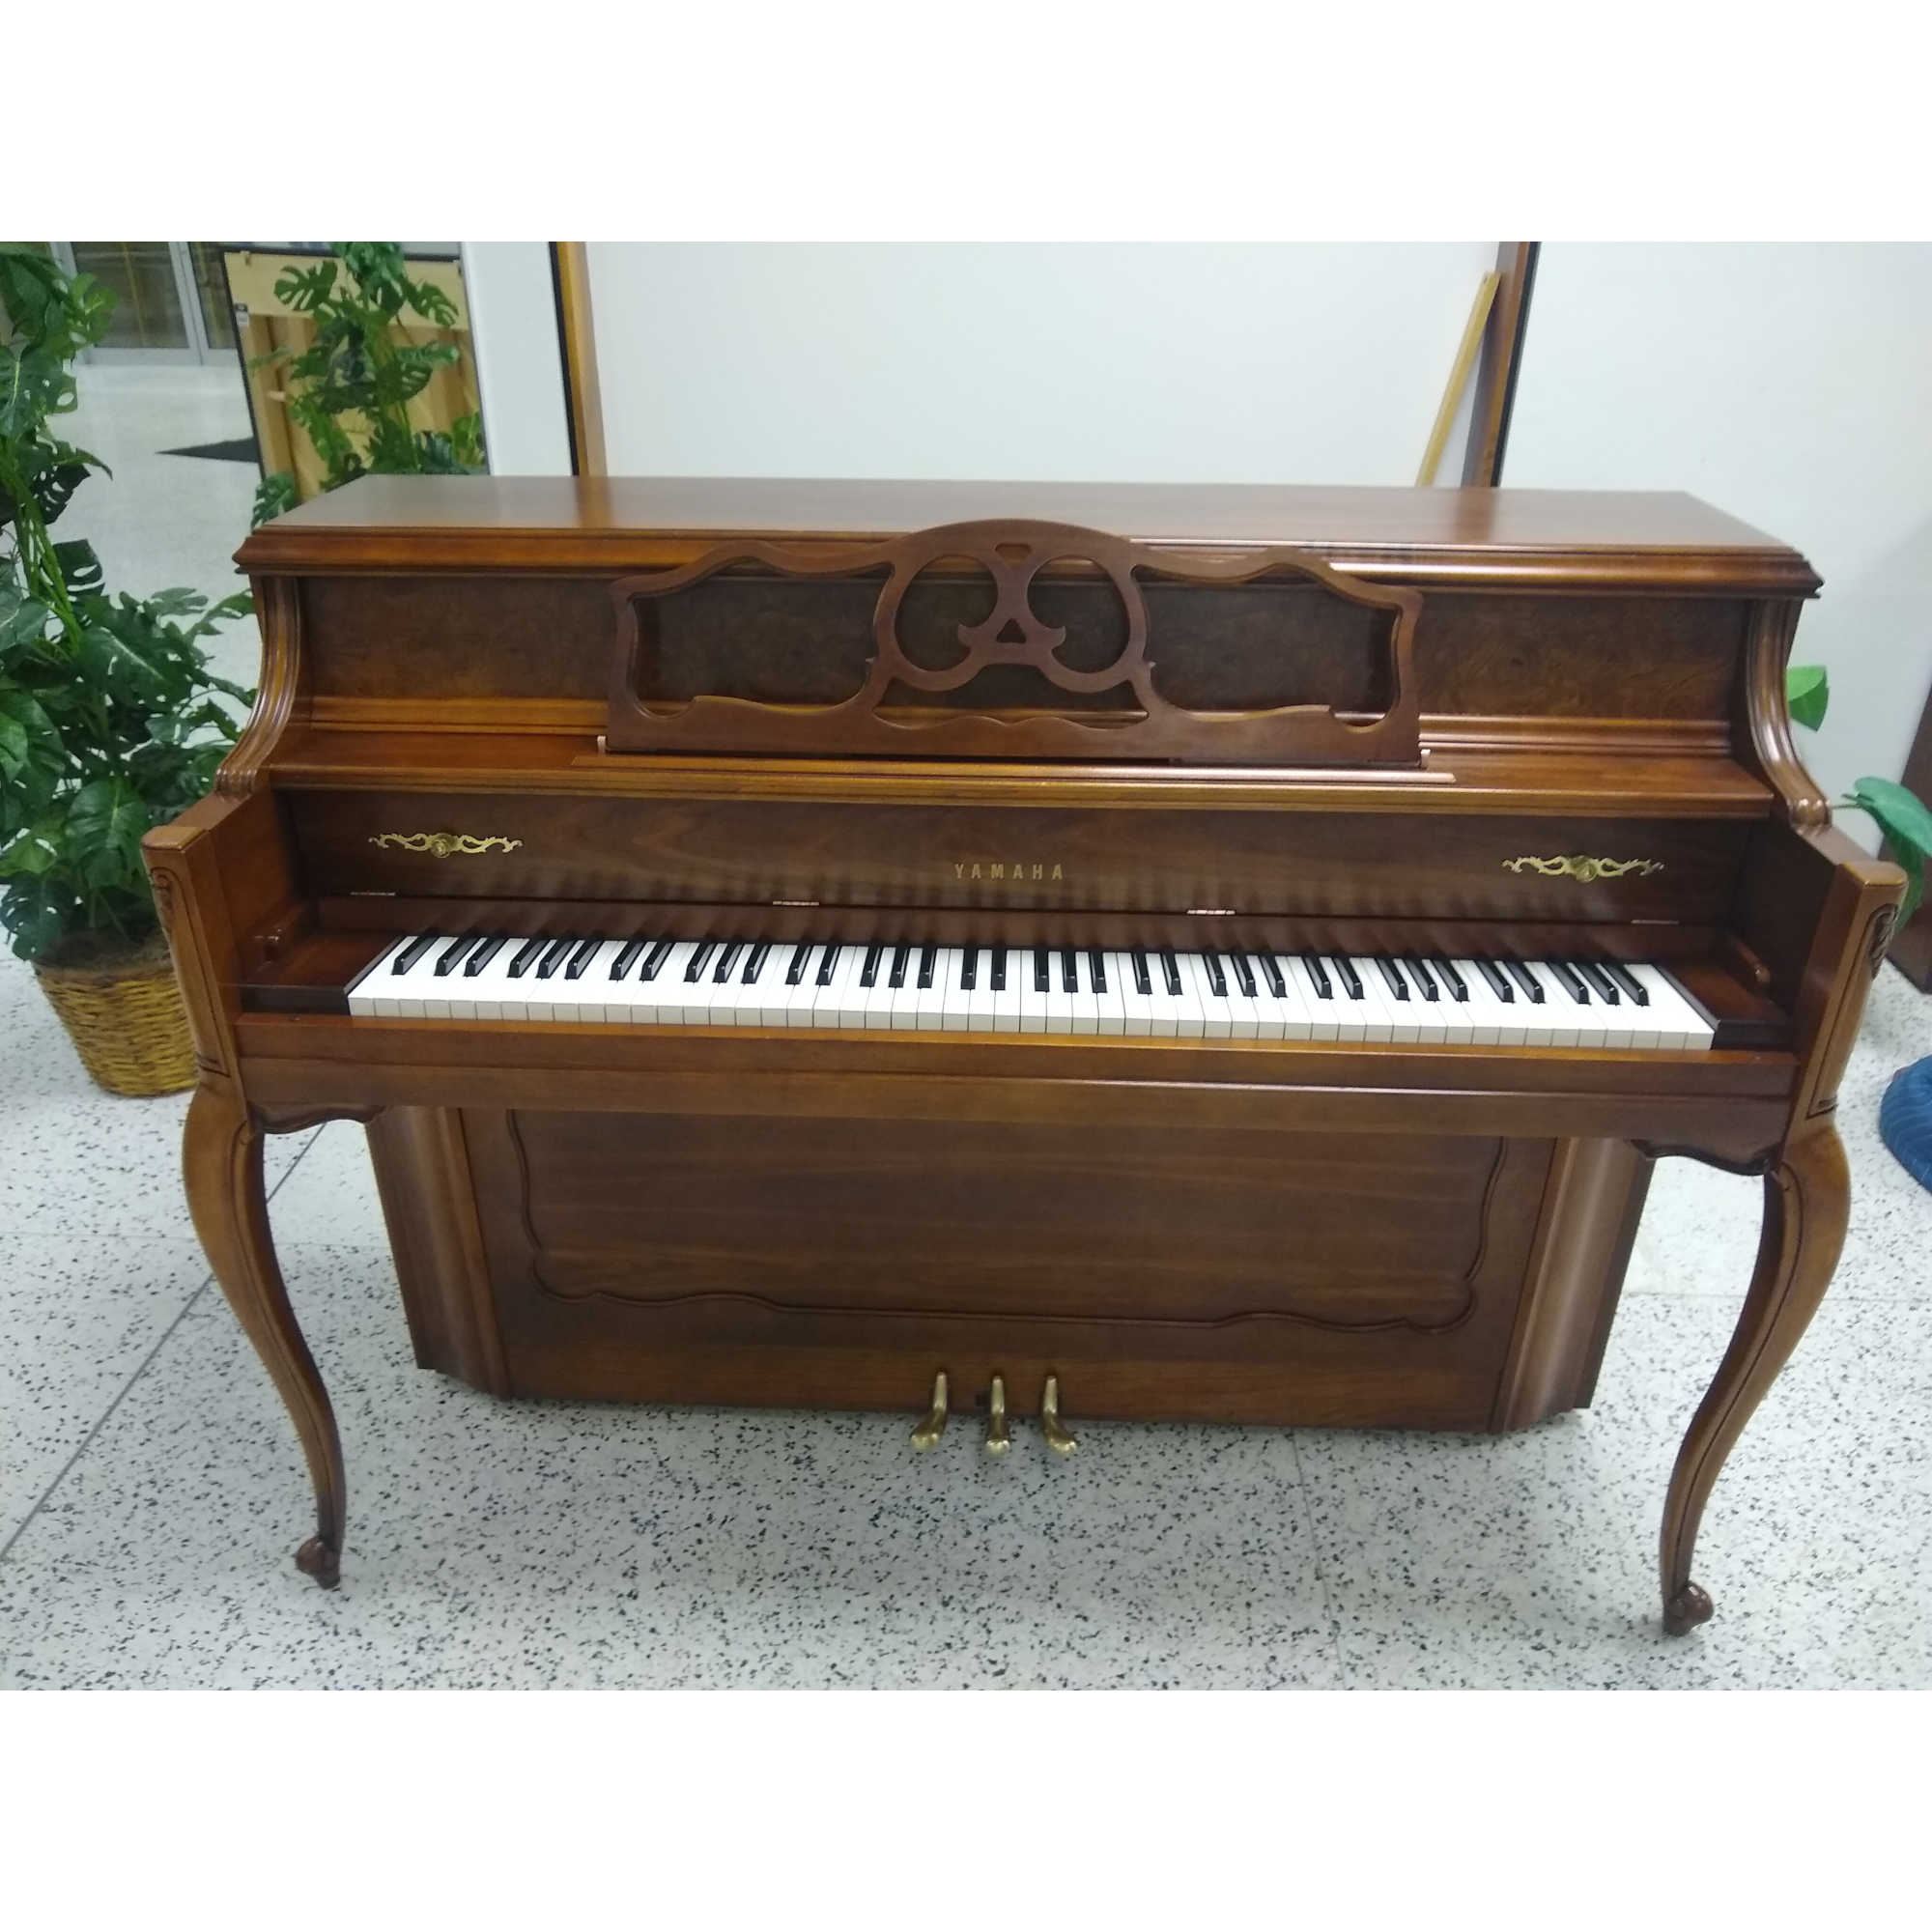 Yamaha Ltd Designer Piano French Cherry